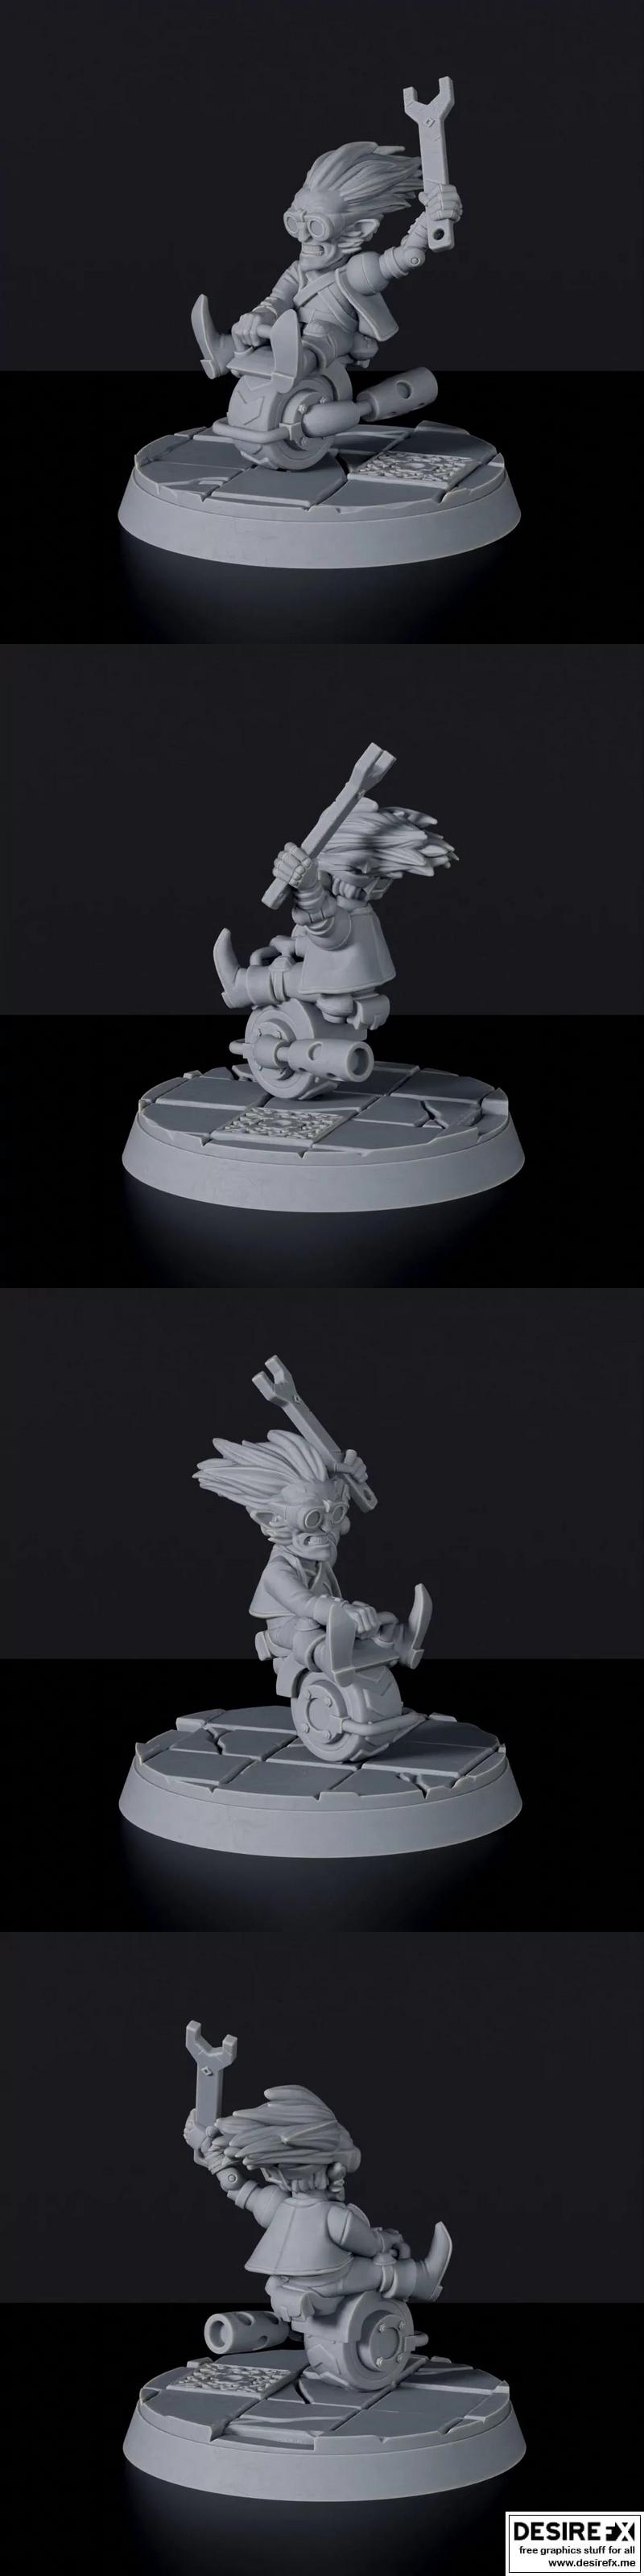 Desire FX 3d models | Zark On Wroomba – 3D Print Model